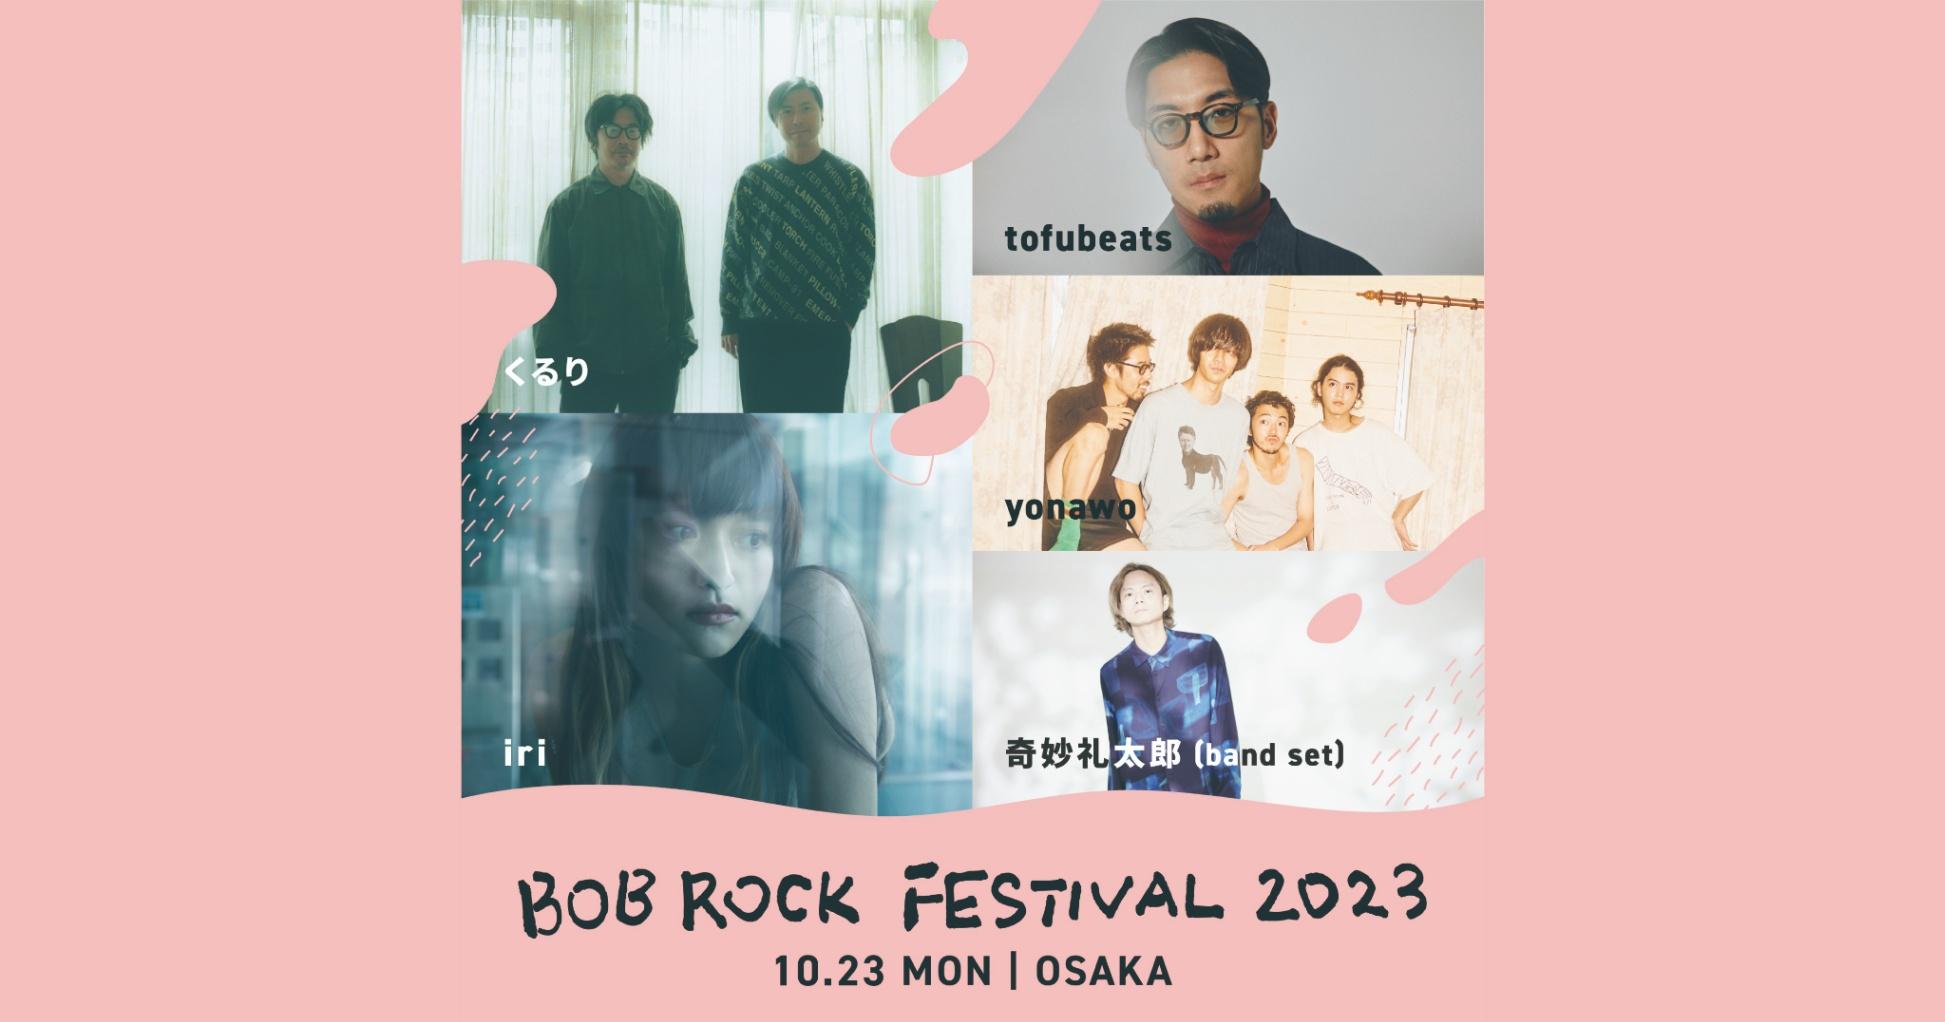 全ての美容師さんに向けた美容師フェス「BOB ROCK FESTIVAL 2023」が開催決定!!